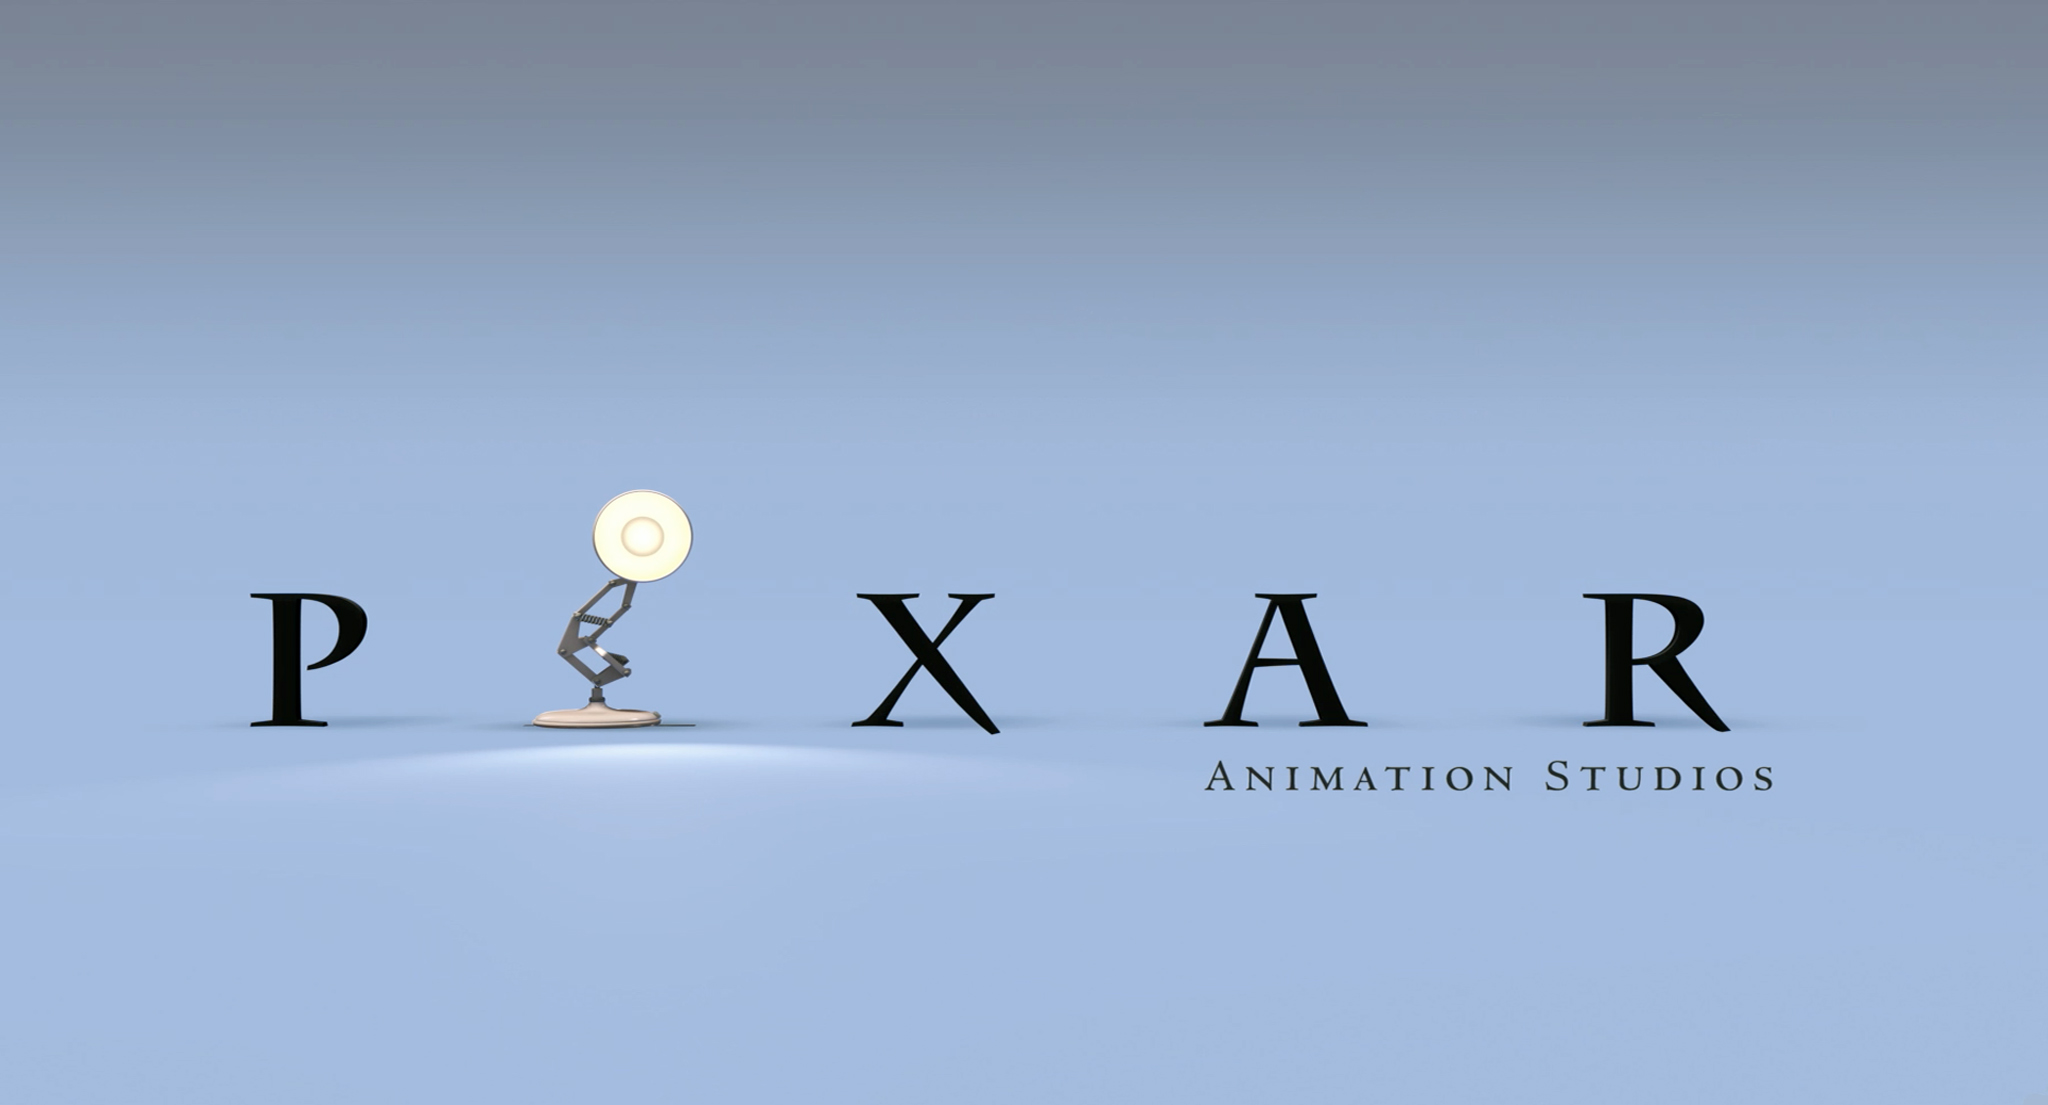 Image Pixar Wallpaper Jpg Wiki Disney Animation